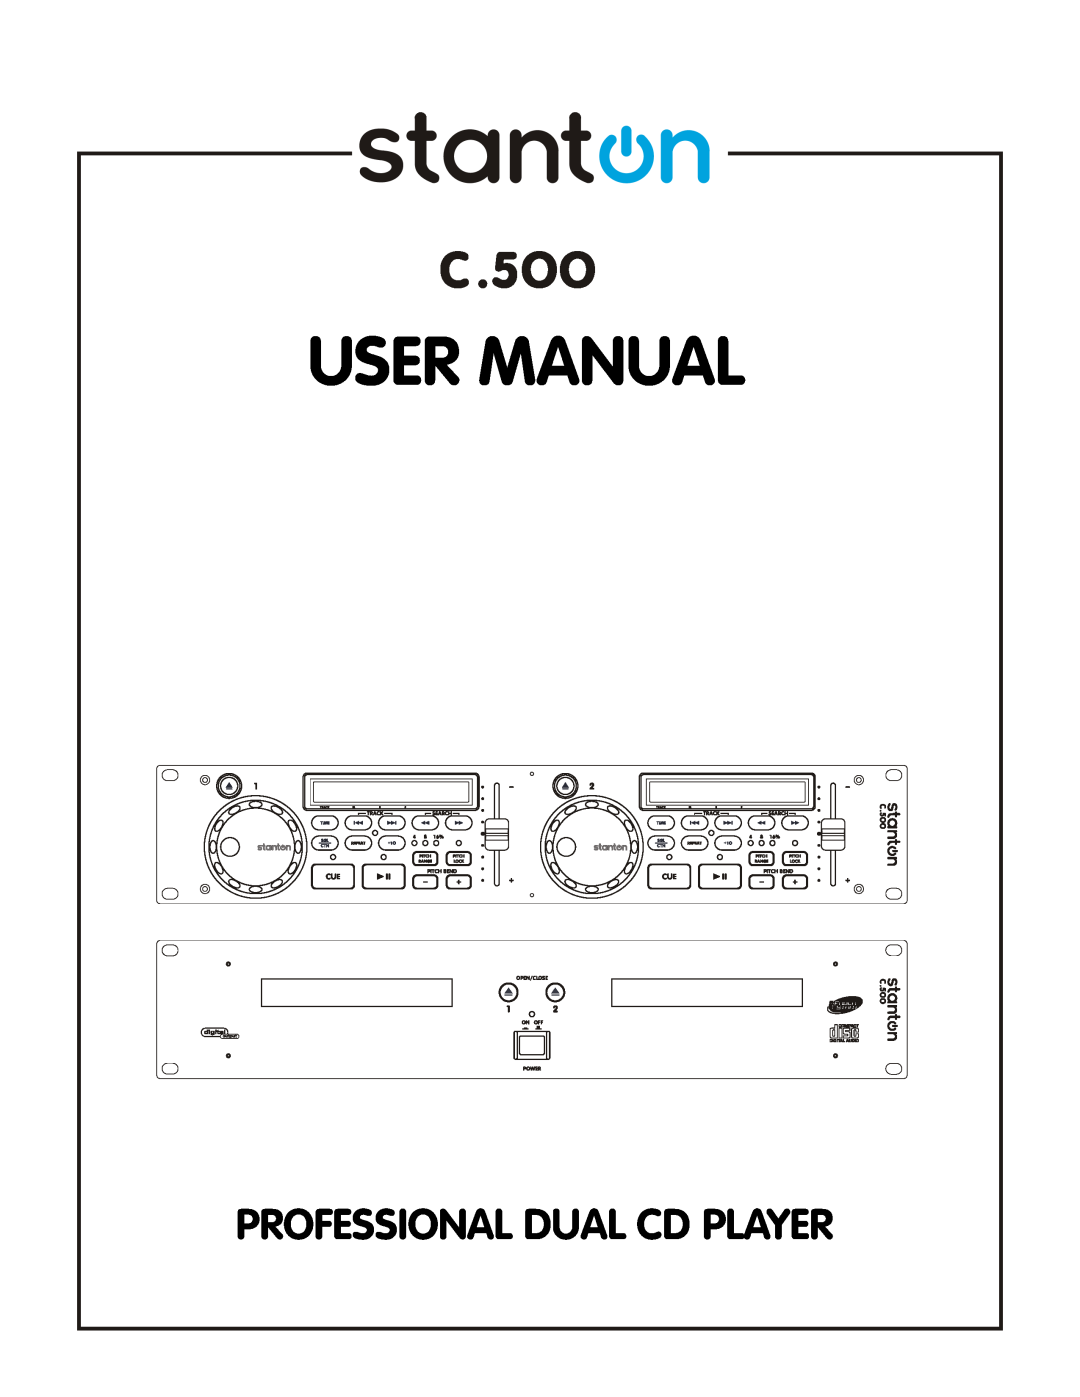 Stanton C-500 user manual Professional Dual Cd Player 